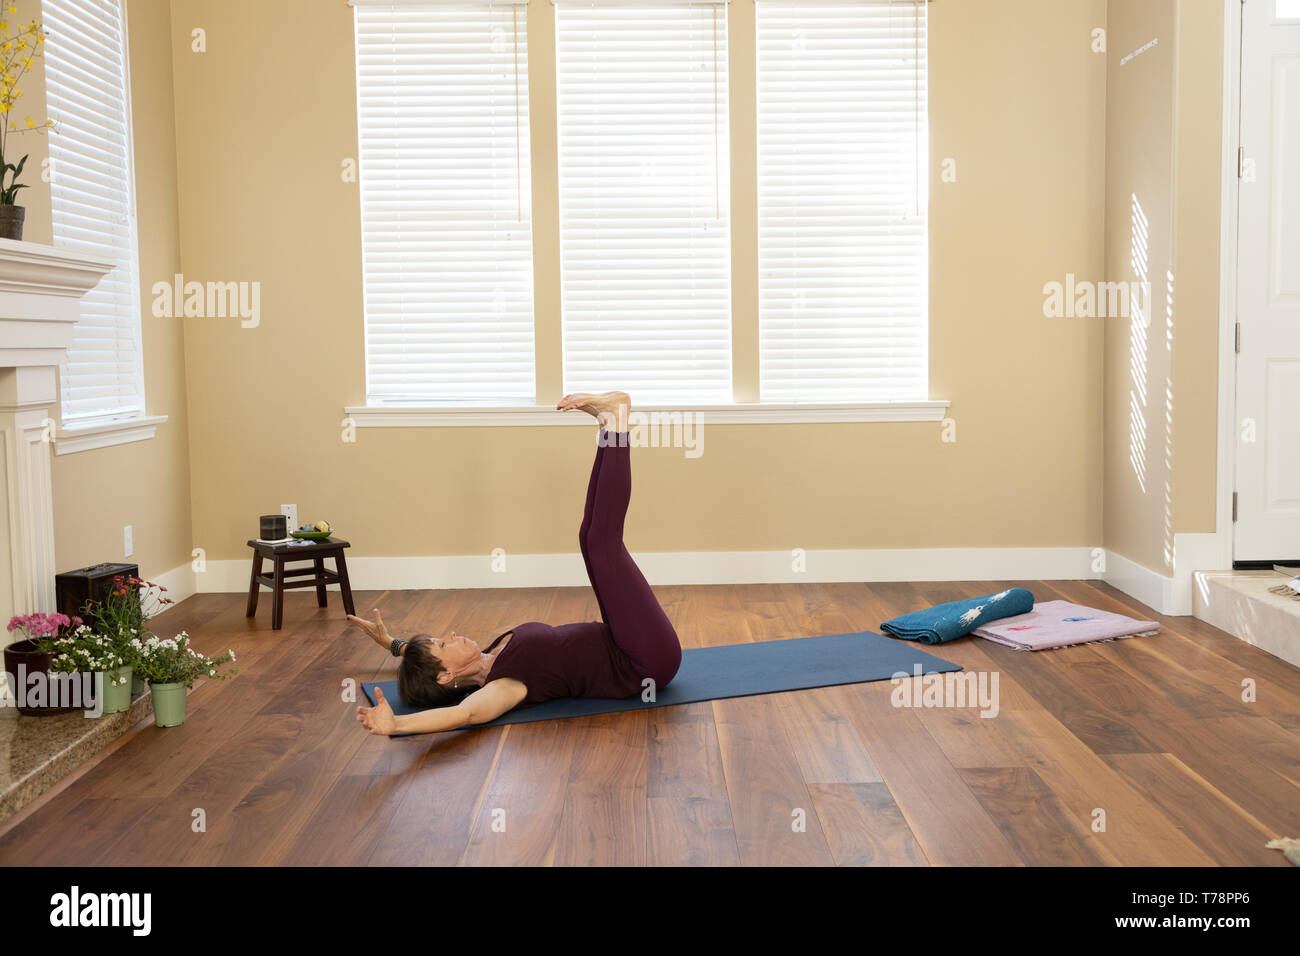 Yoga étirement des ischio-jambiers en position couchée Banque D'Images